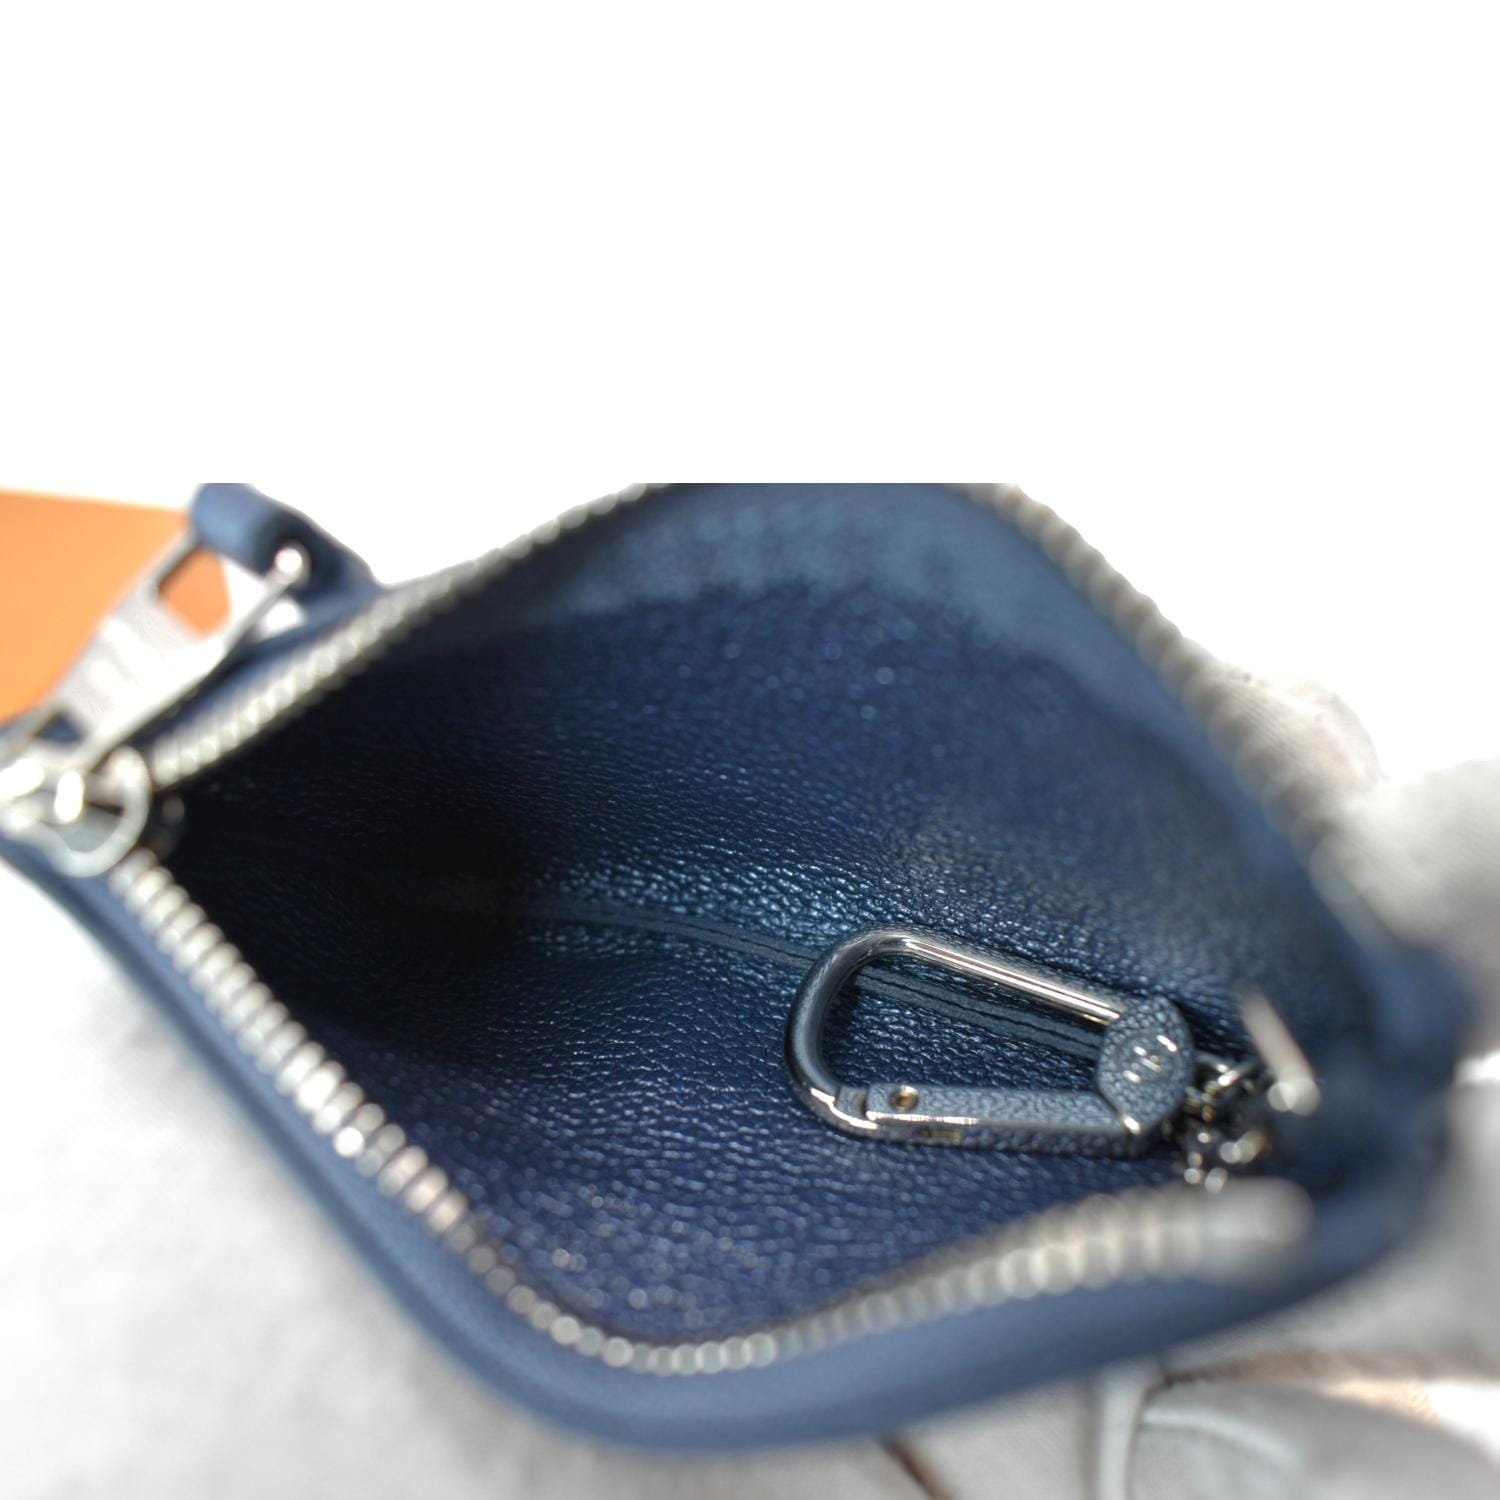 Authentic Louis Vuitton Blue Monogram Empreinte Leather Key Pouch